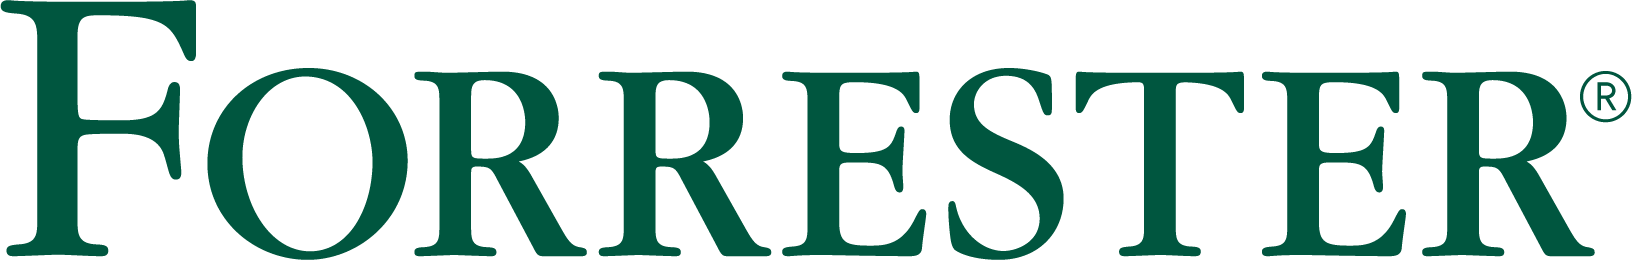 Логотип Forrester